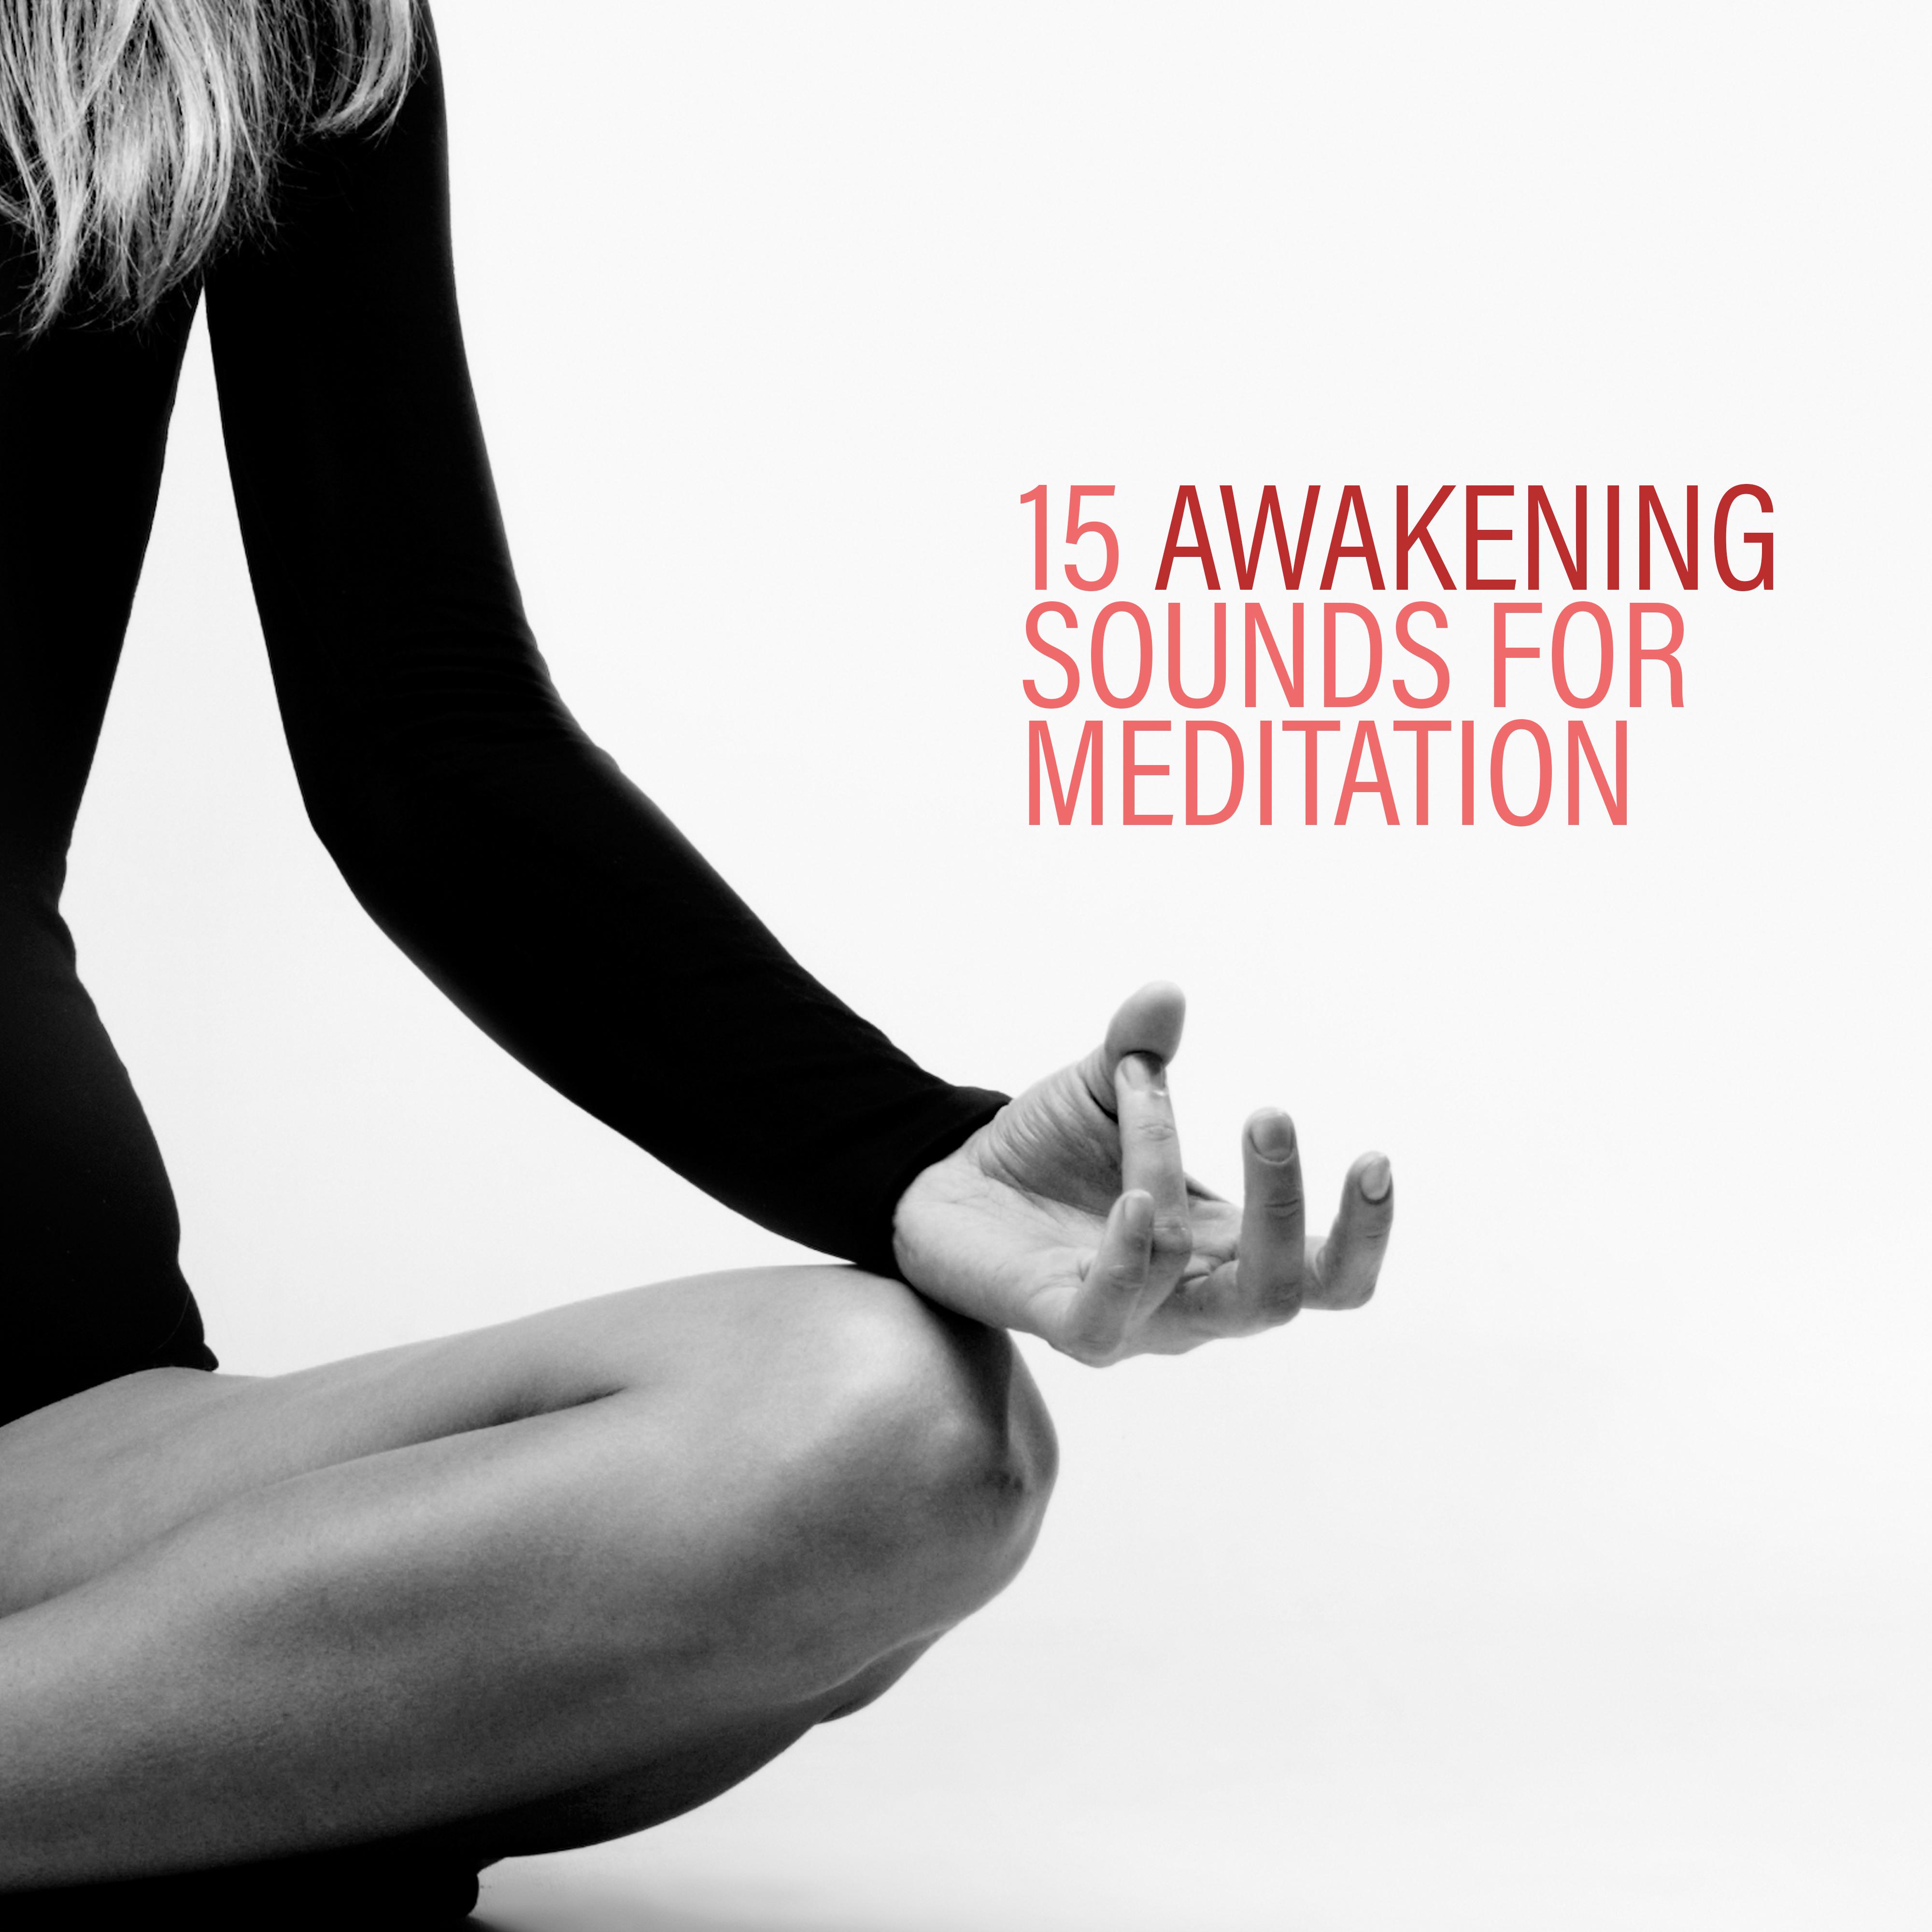 15 Awakening Sounds for Meditation  Yoga Music, Meditation Music Zone, Spiritual Music for Relaxation, Zen, Inner Harmony